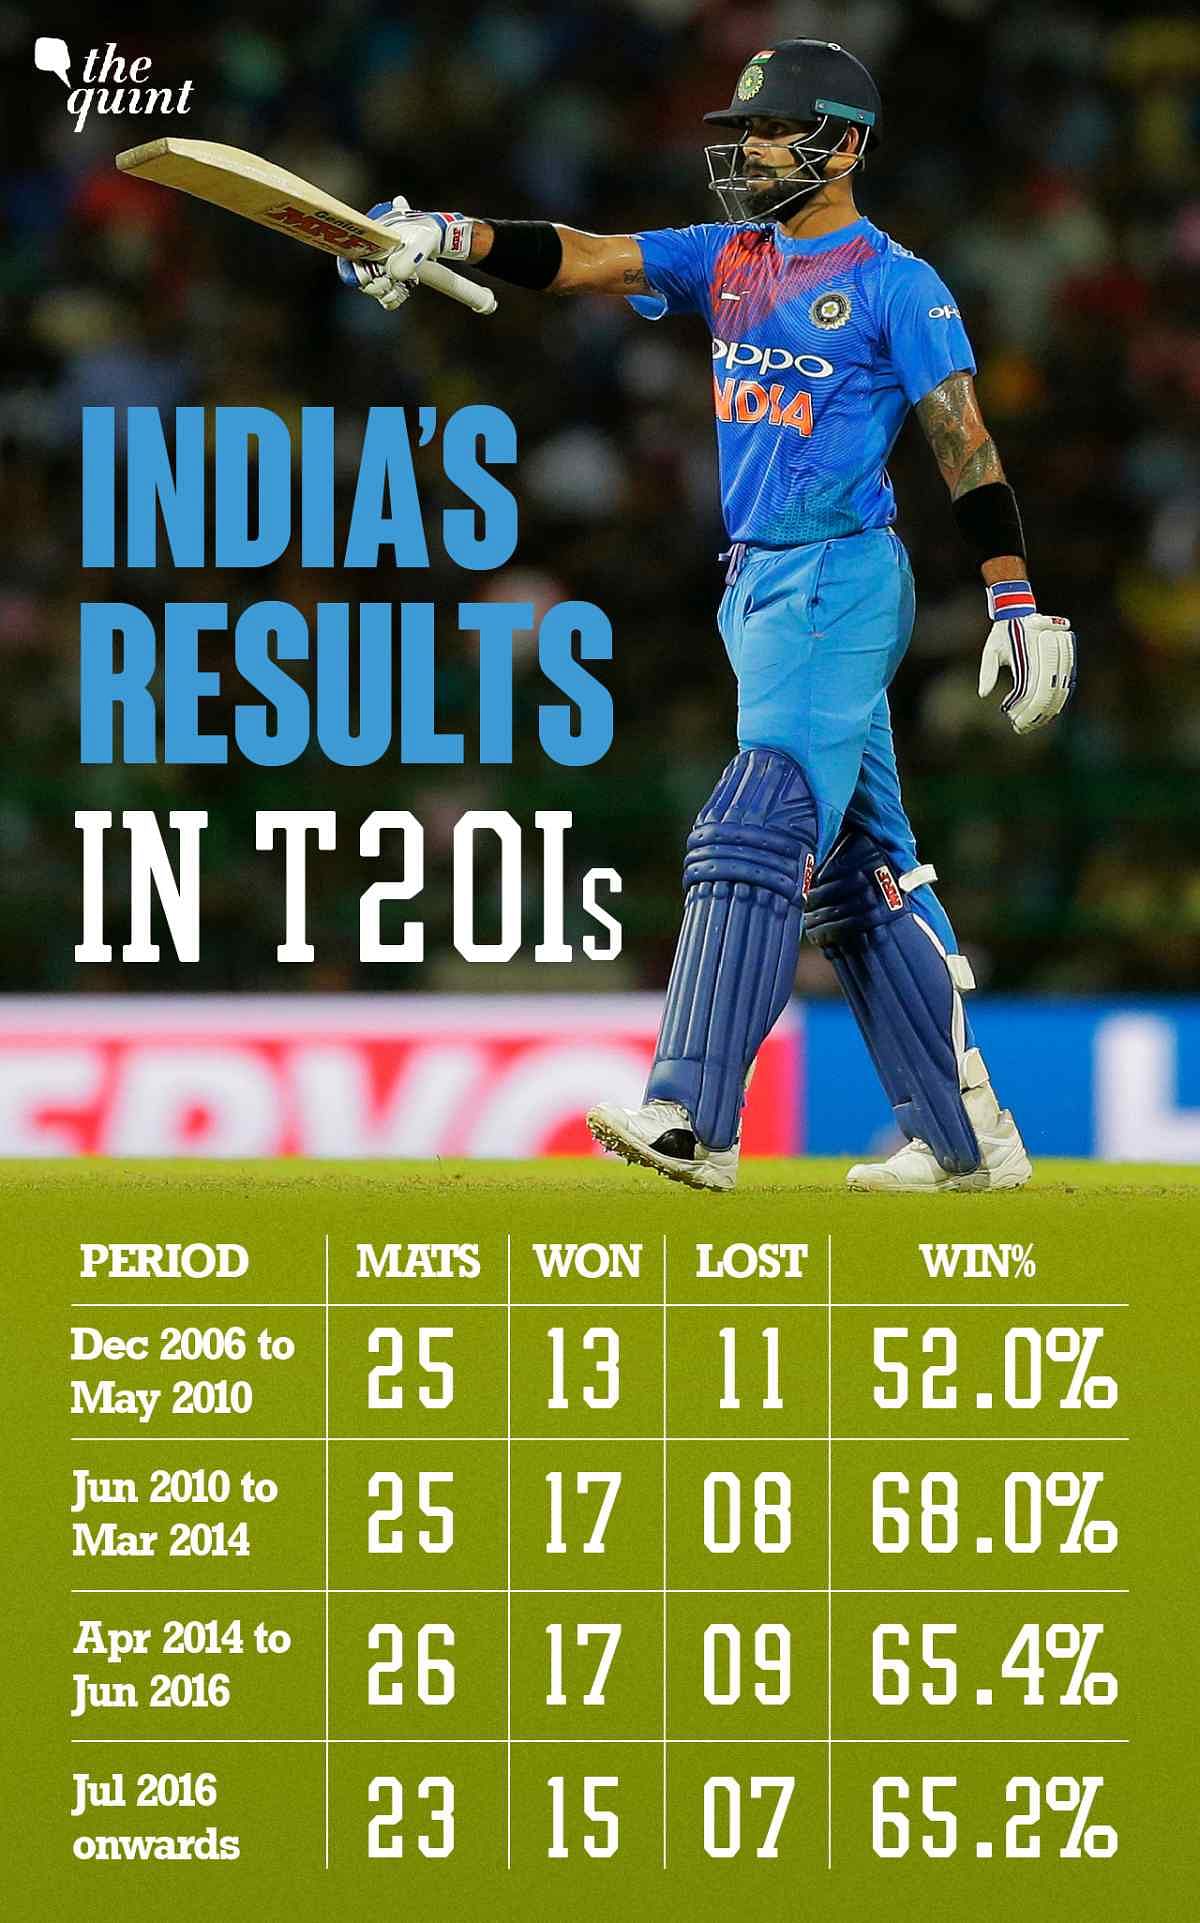 भारत और आयरलैंड के बीच दो टी20 मैच 27 और 29 जून को खेले जाएंगे